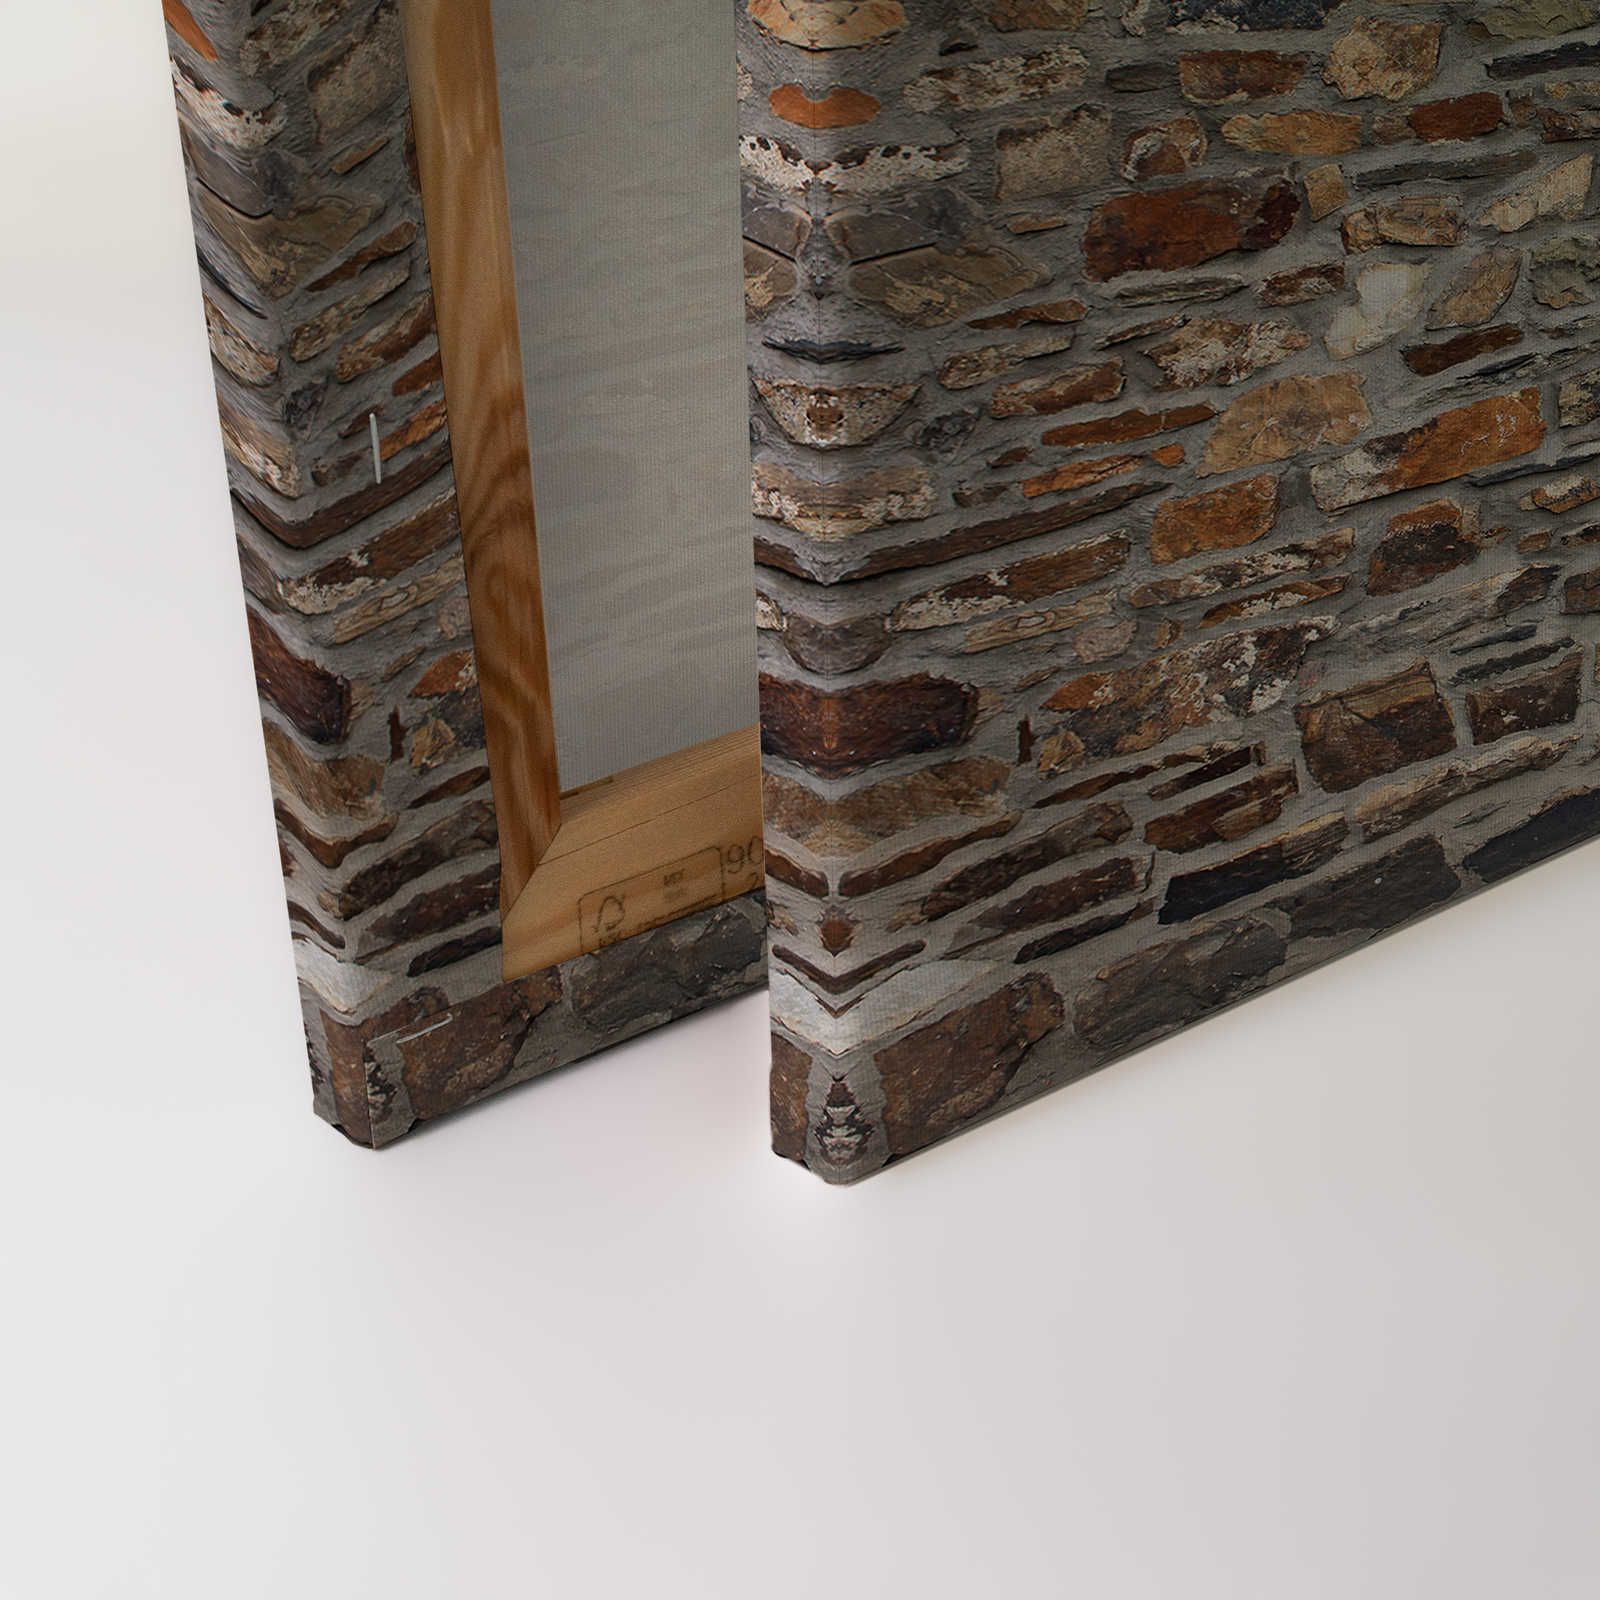             Toile 3D Mur de vieilles briques & aspect pierre rustique - 0,90 m x 0,60 m
        